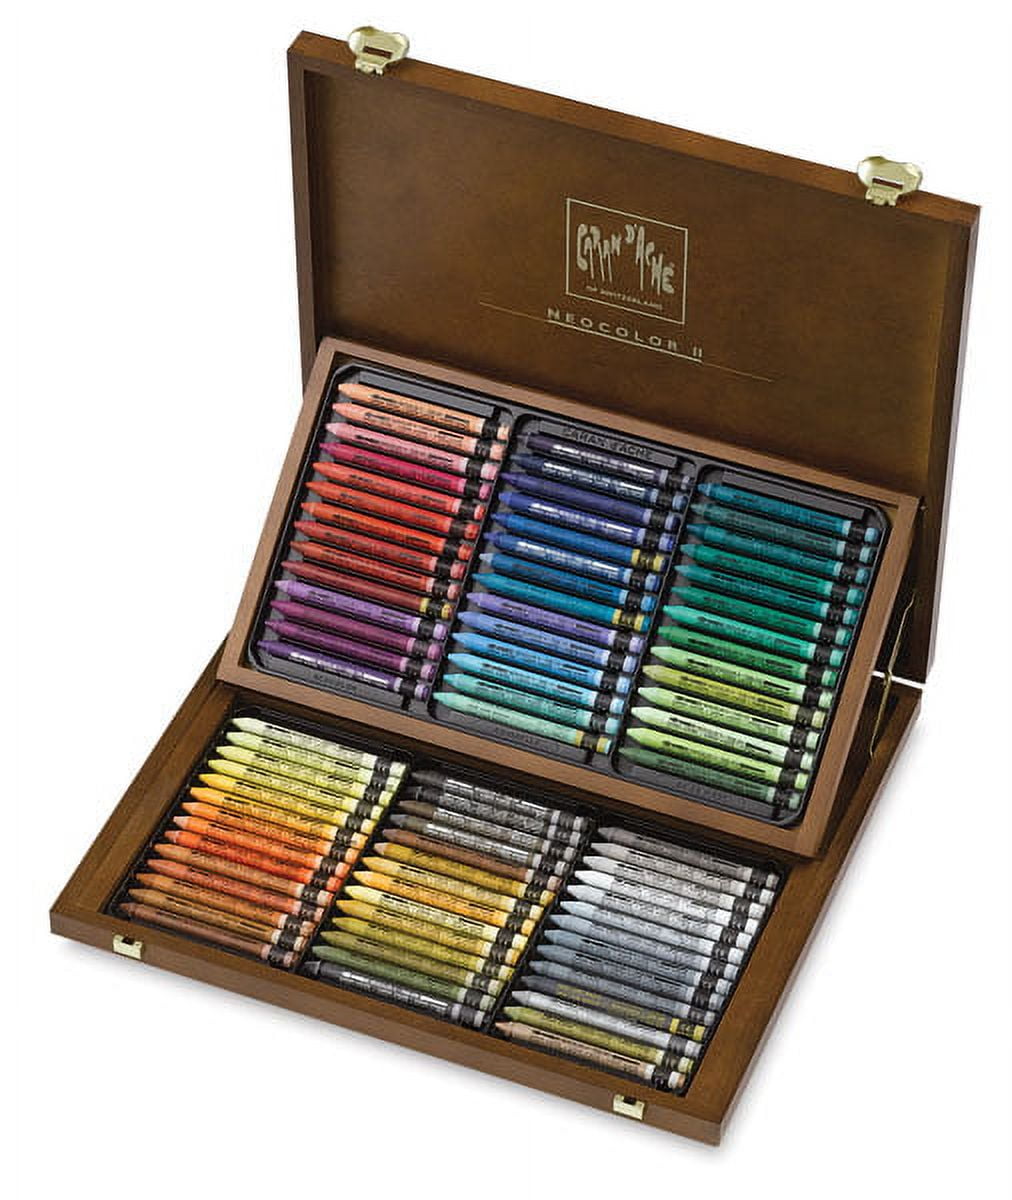 Caran d'Ache Neocolor II Aquarelle Artists' Pastel Set - Assorted Colors,  Wood Box , Set of 84 